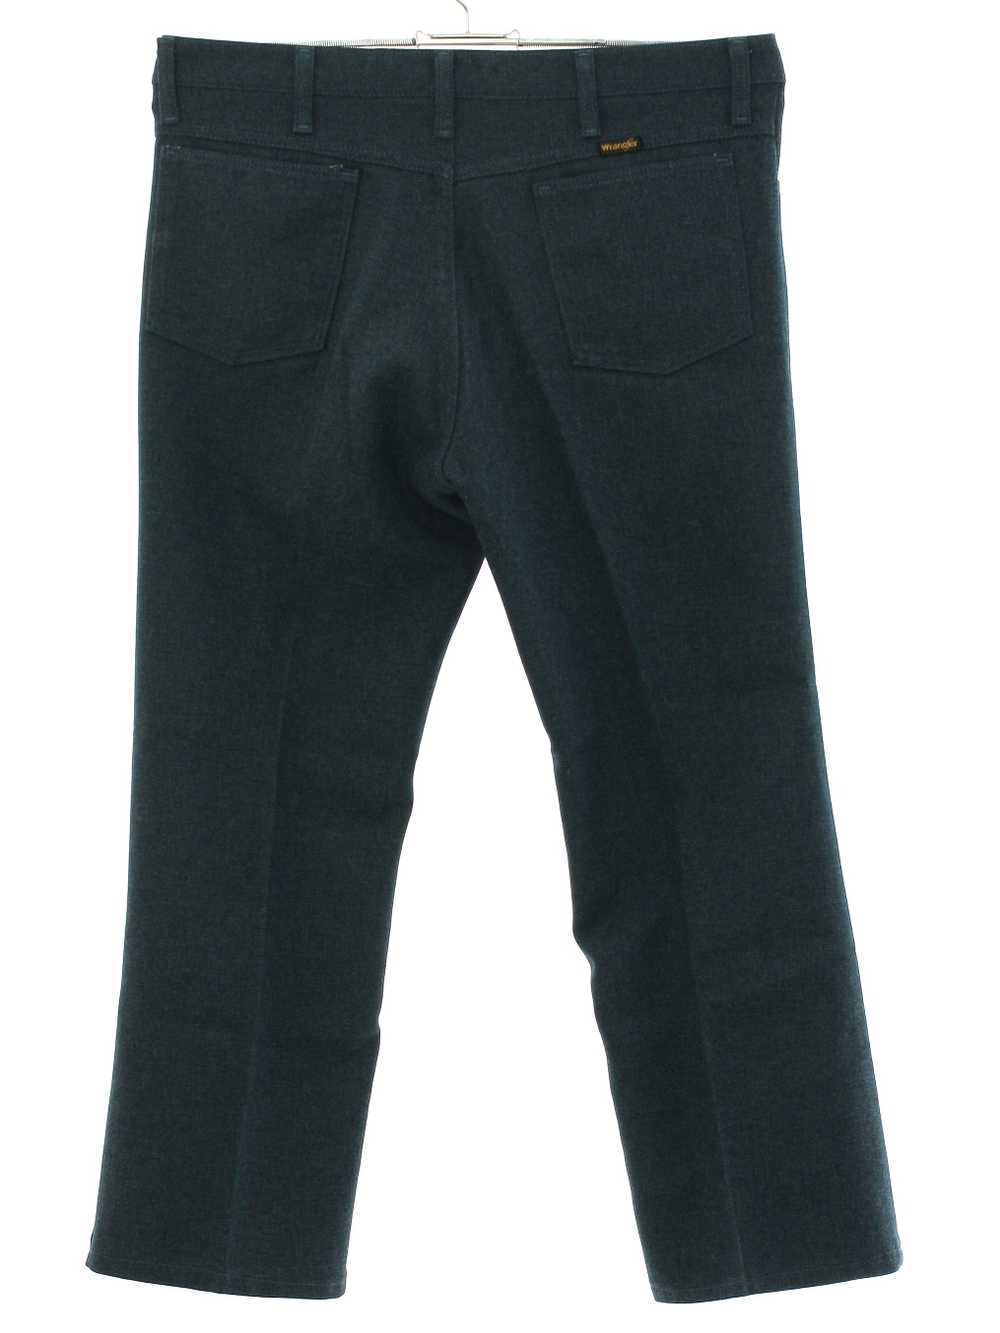 1970's Wrangler Mens Wrangler Jeans-Cut Pants - image 3